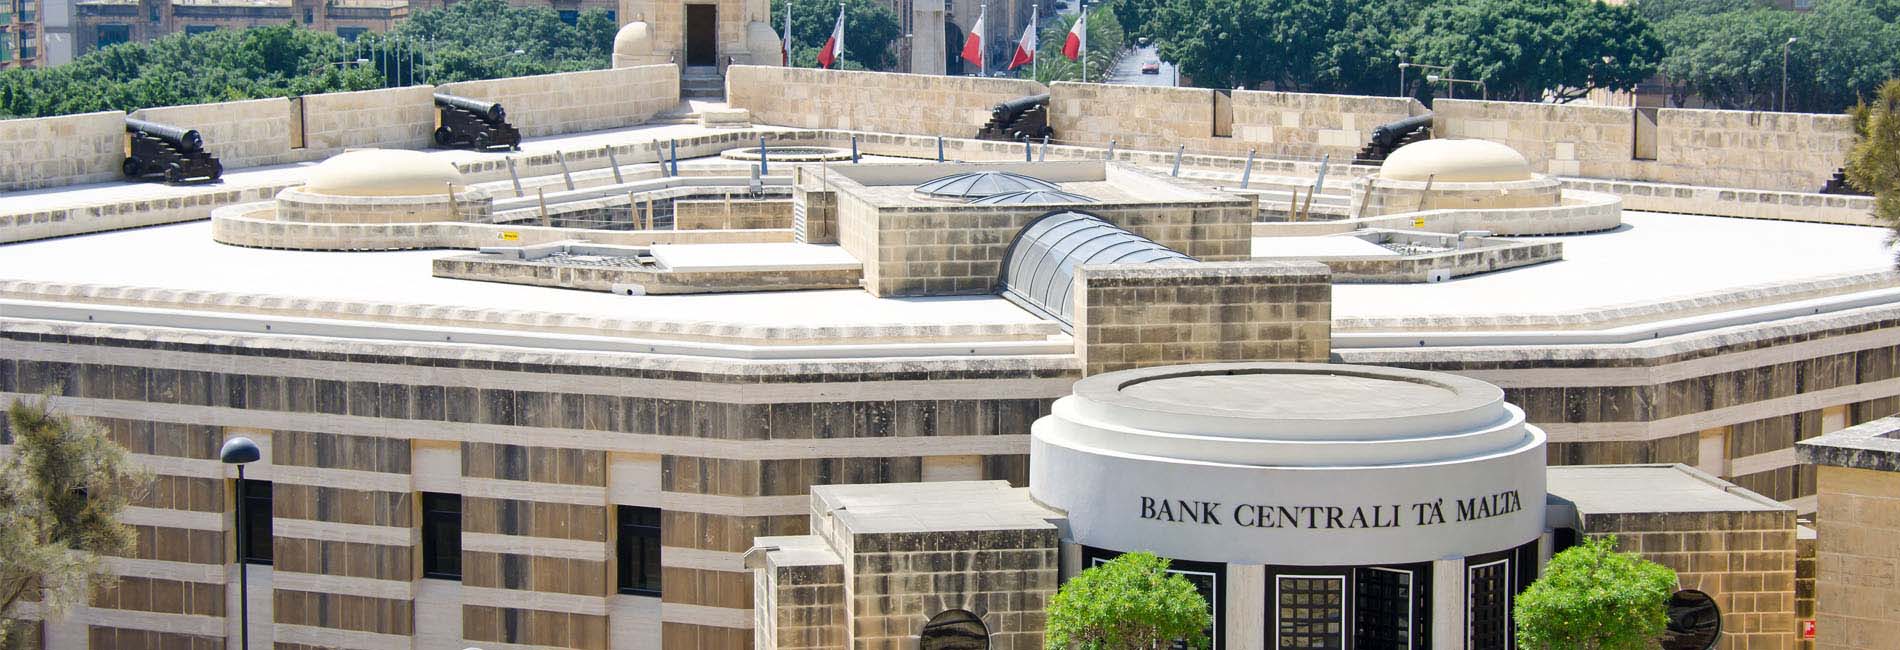 Foto Malta, Valetta, Zentral Bank